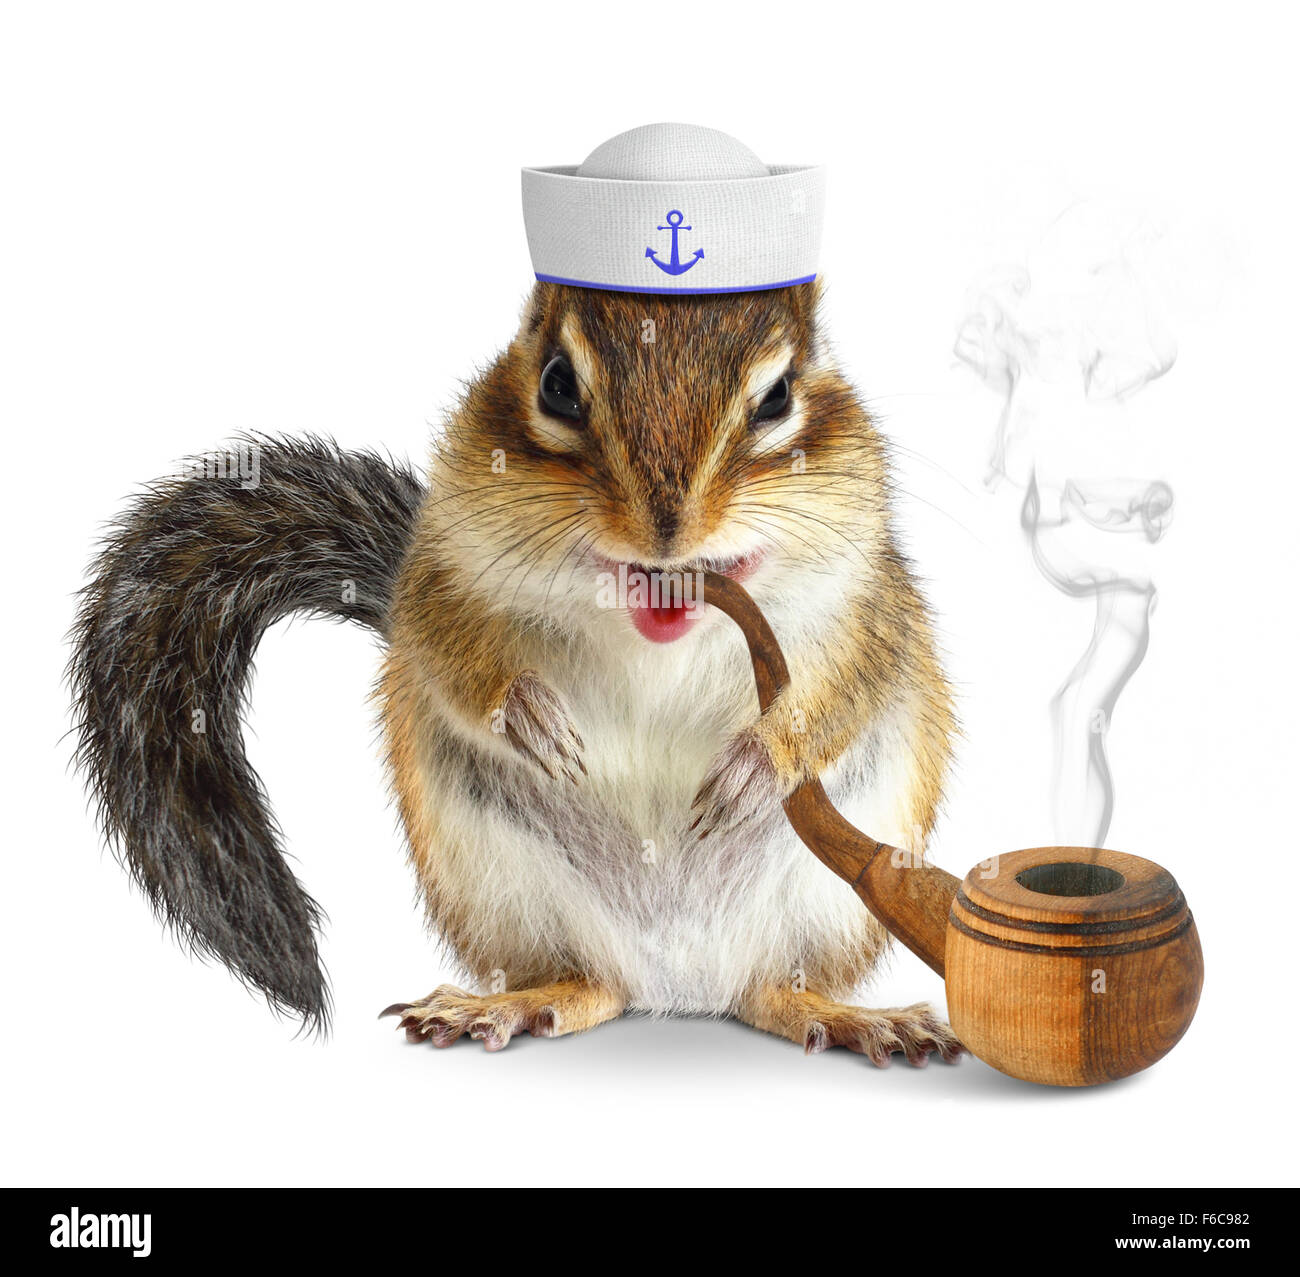 Funny animal marin, l'écureuil avec pipe Banque D'Images